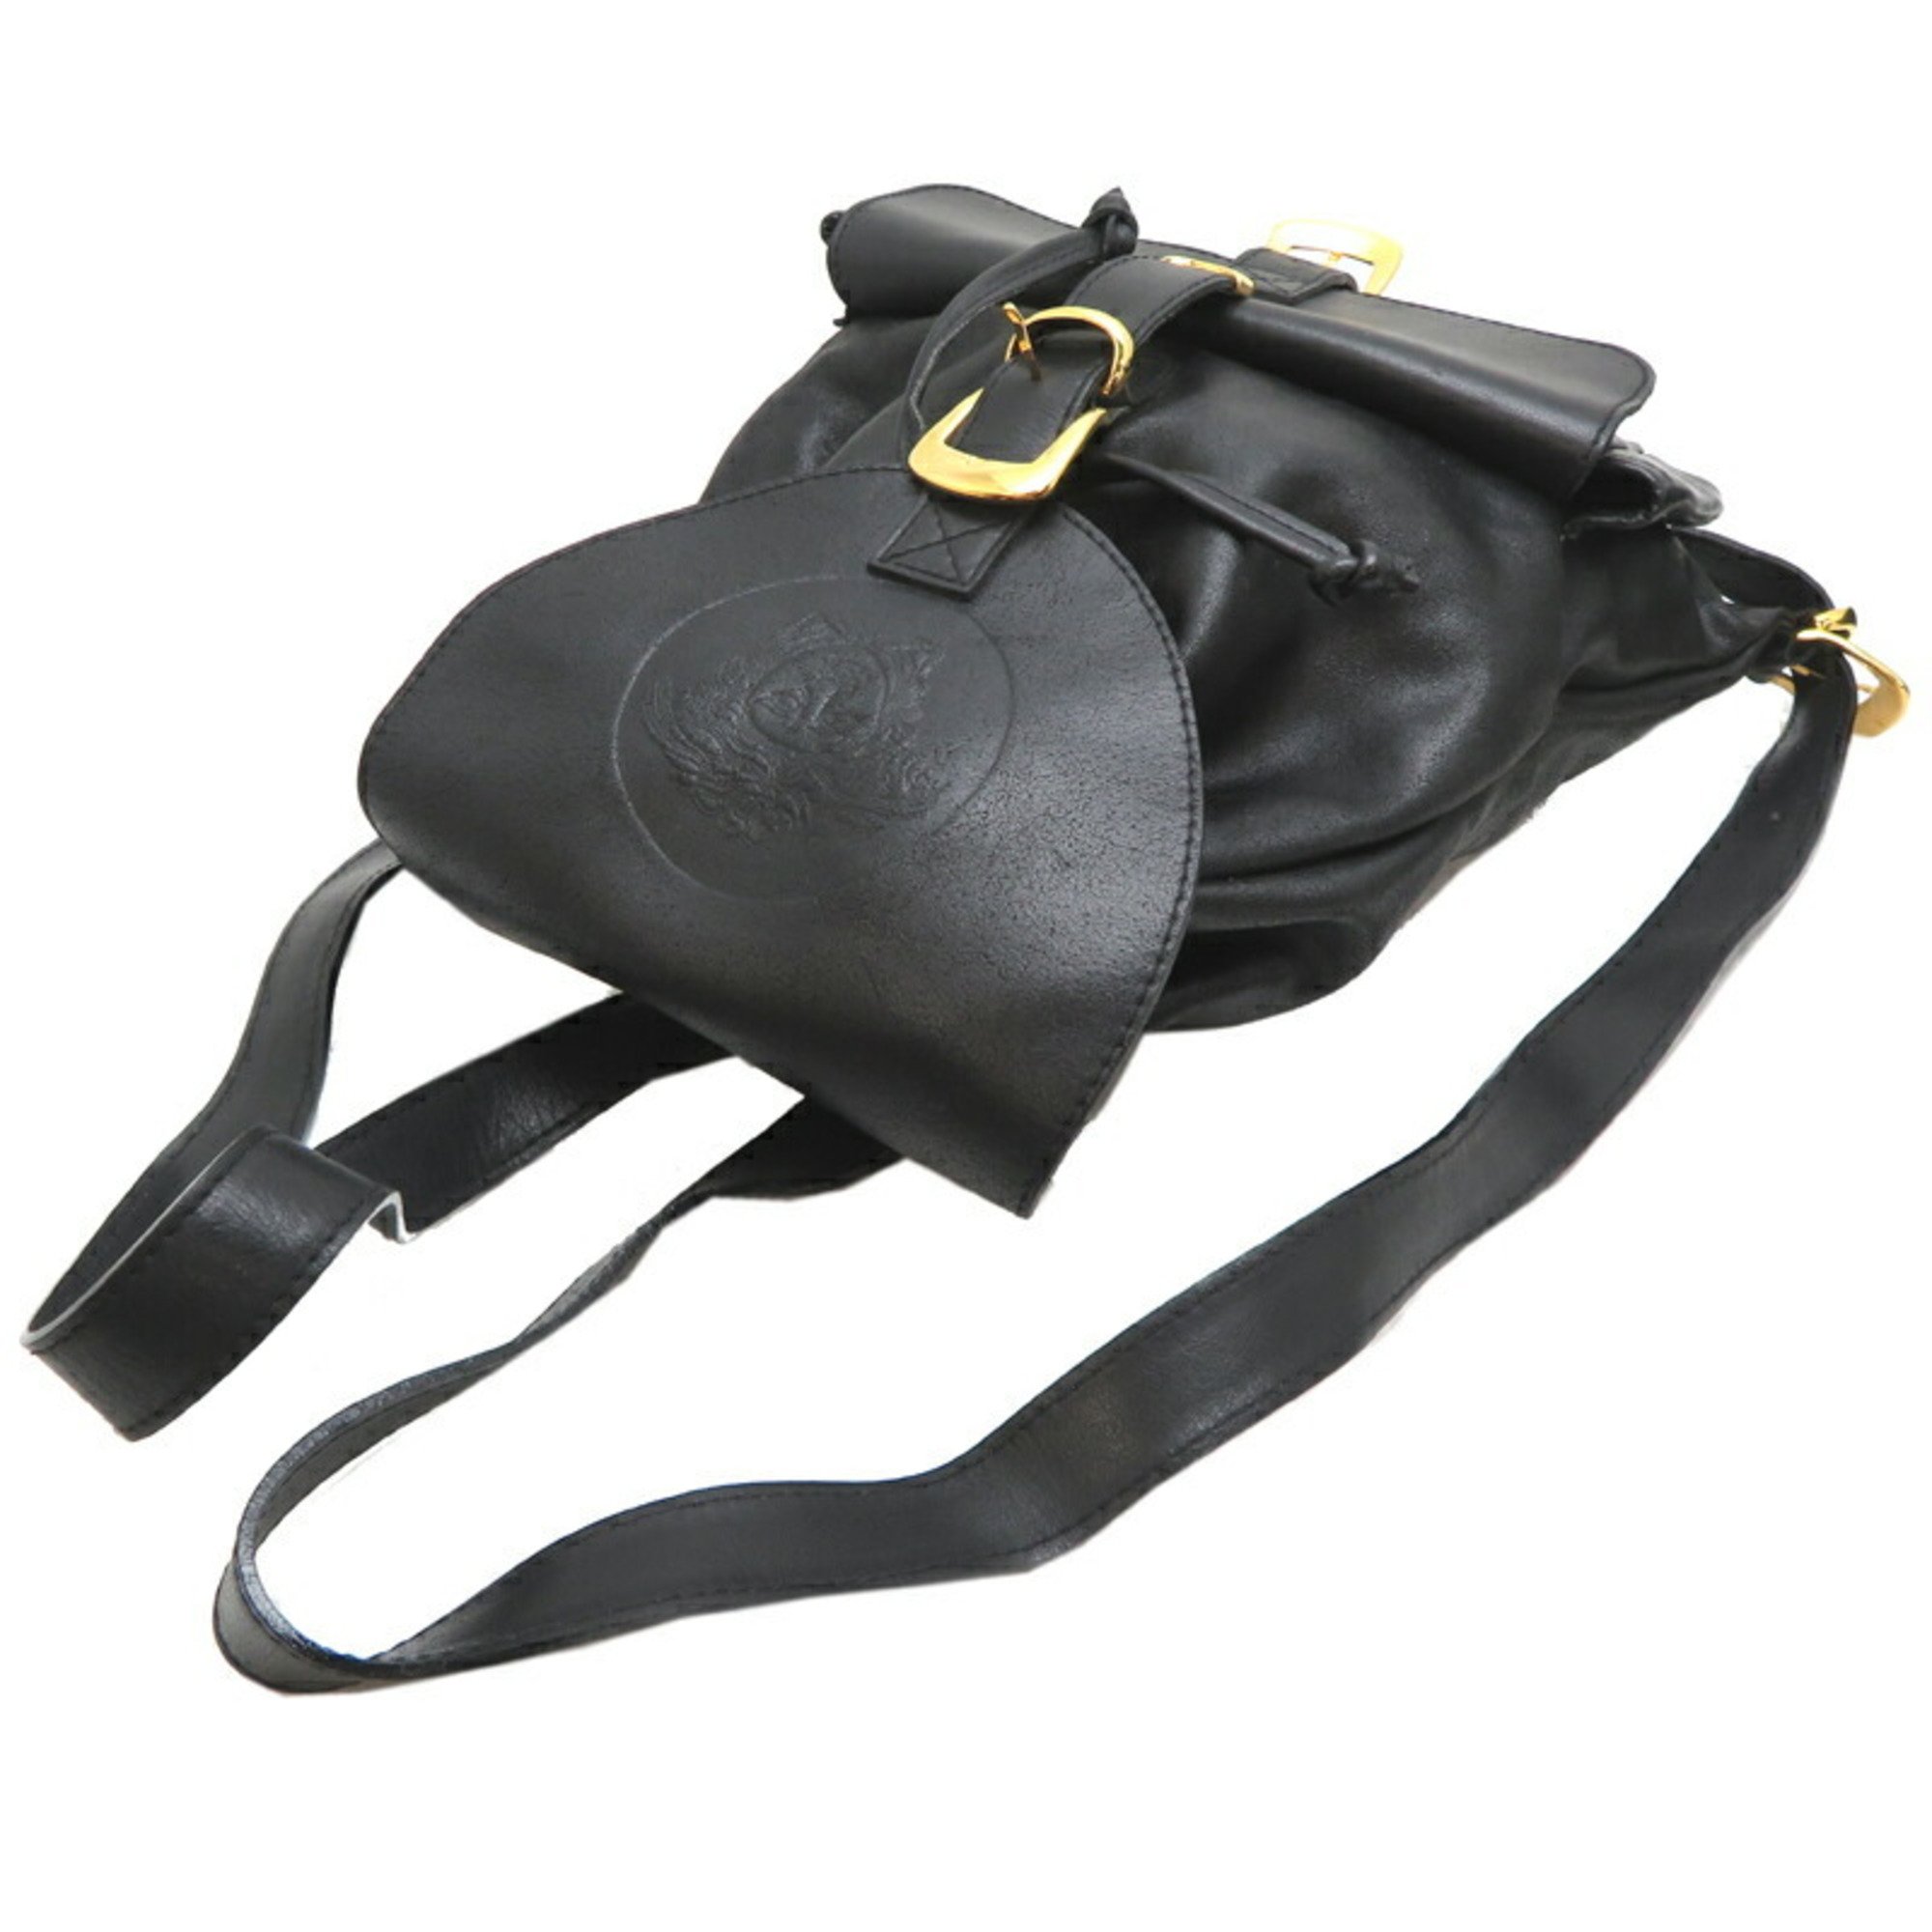 Versace Medusa Backpack Women's Rucksack/Daypack Leather Black